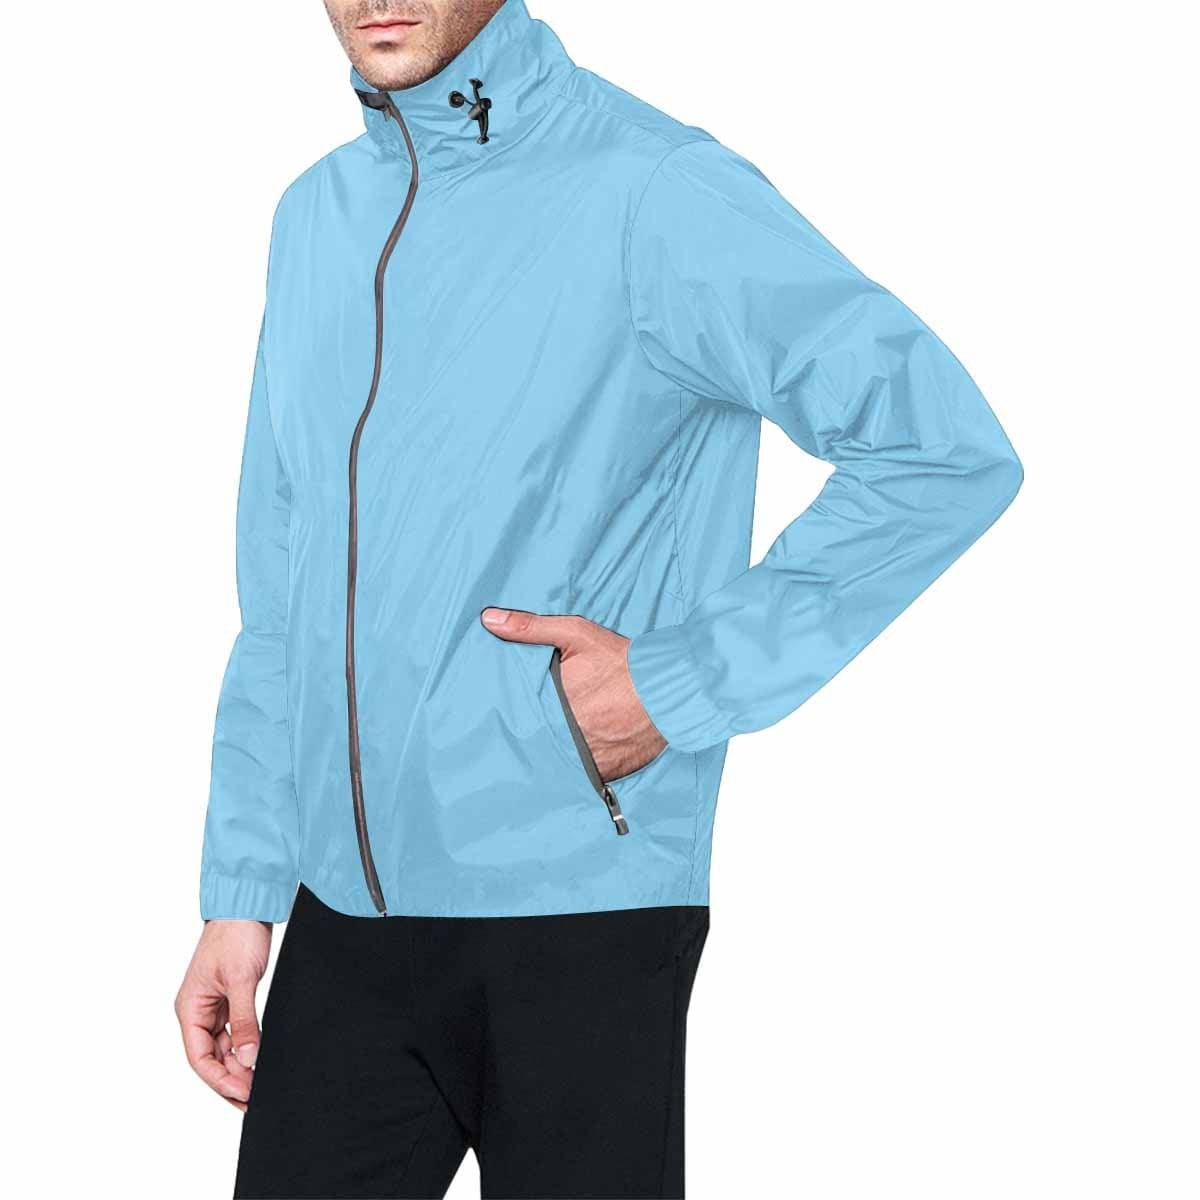 Light Blue Hooded Windbreaker Jacket - Men / Women - KME means the very best